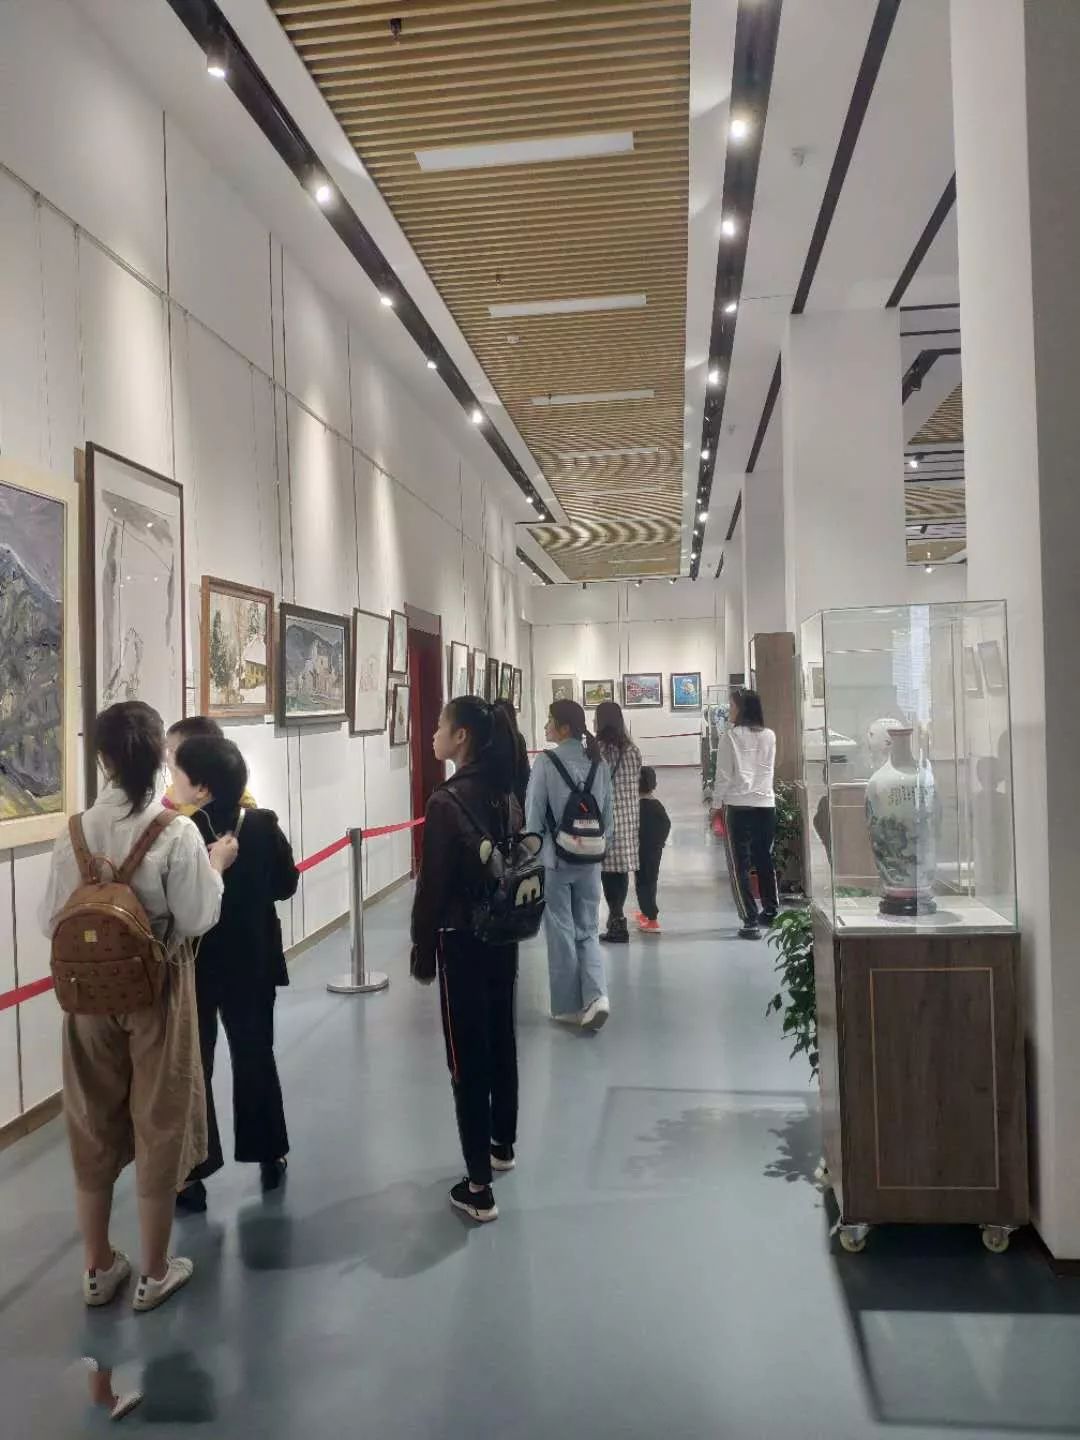 鹰潭美术馆开馆展览参观人数已突破万人,三大主题展览你不可错过!